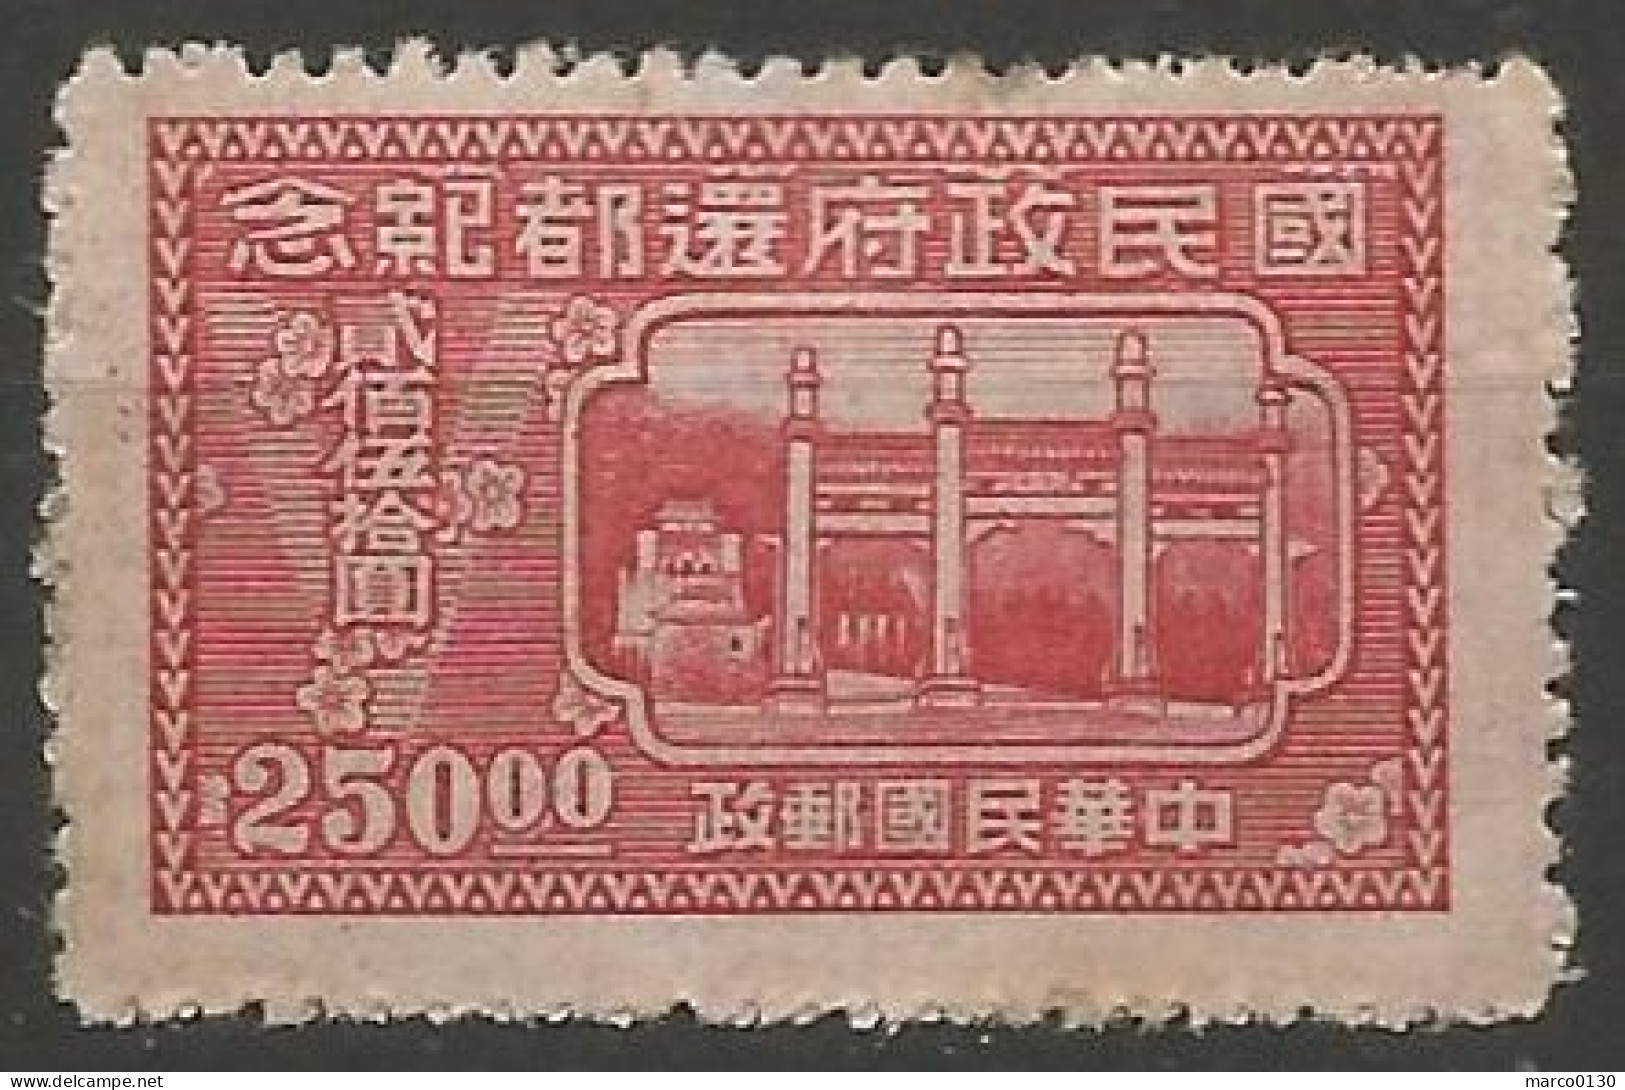 CHINE N° 605 + N° 606 + N° 607 + N° 608 + N° 609  NEUF - 1912-1949 Republic